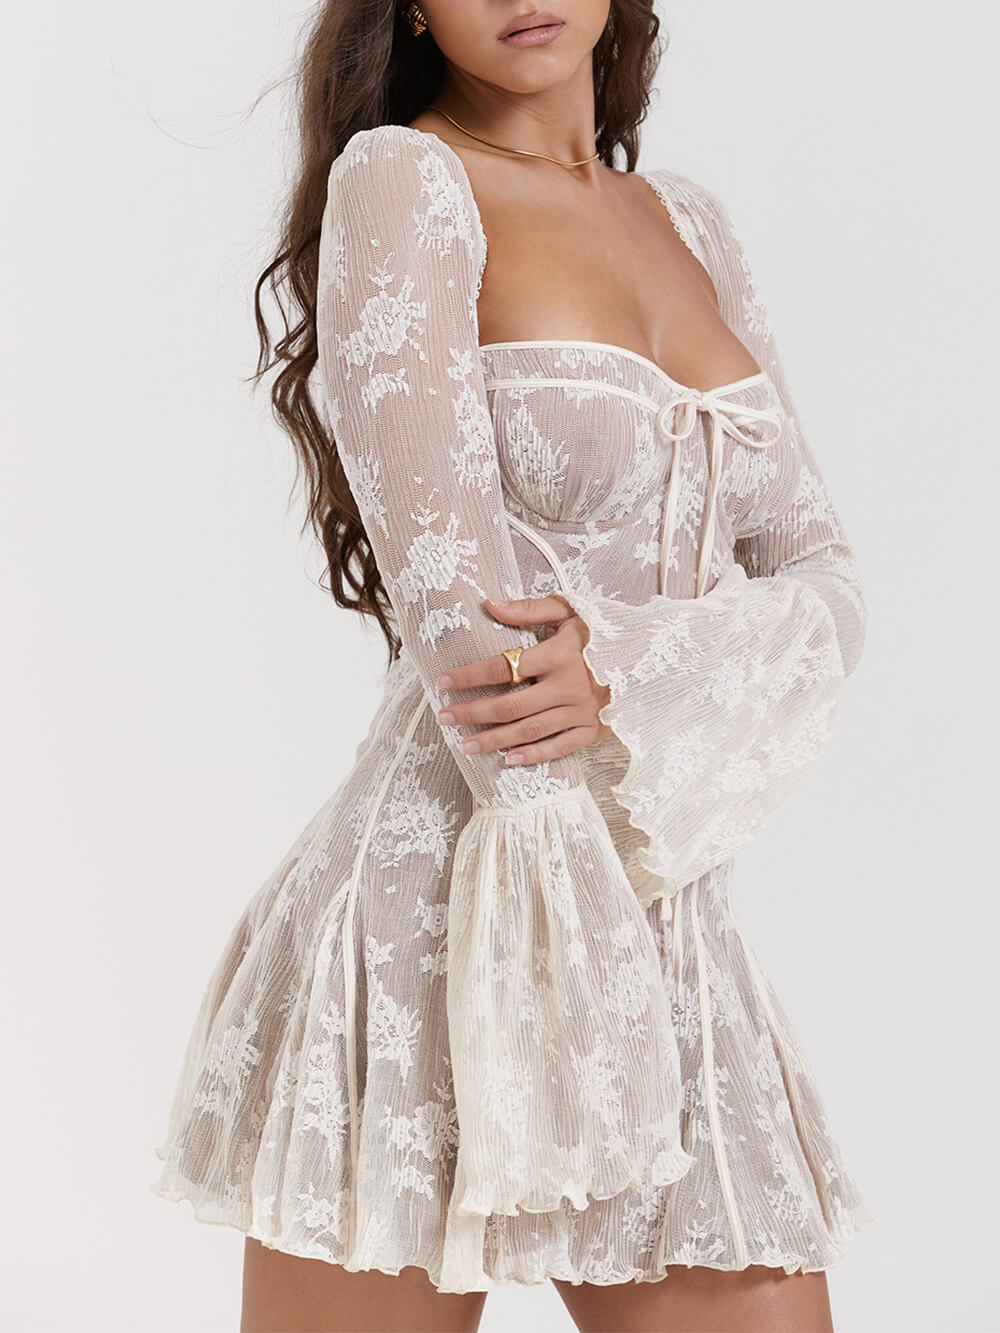 Vintage Cream Lace Corset Dress – Likemychoice